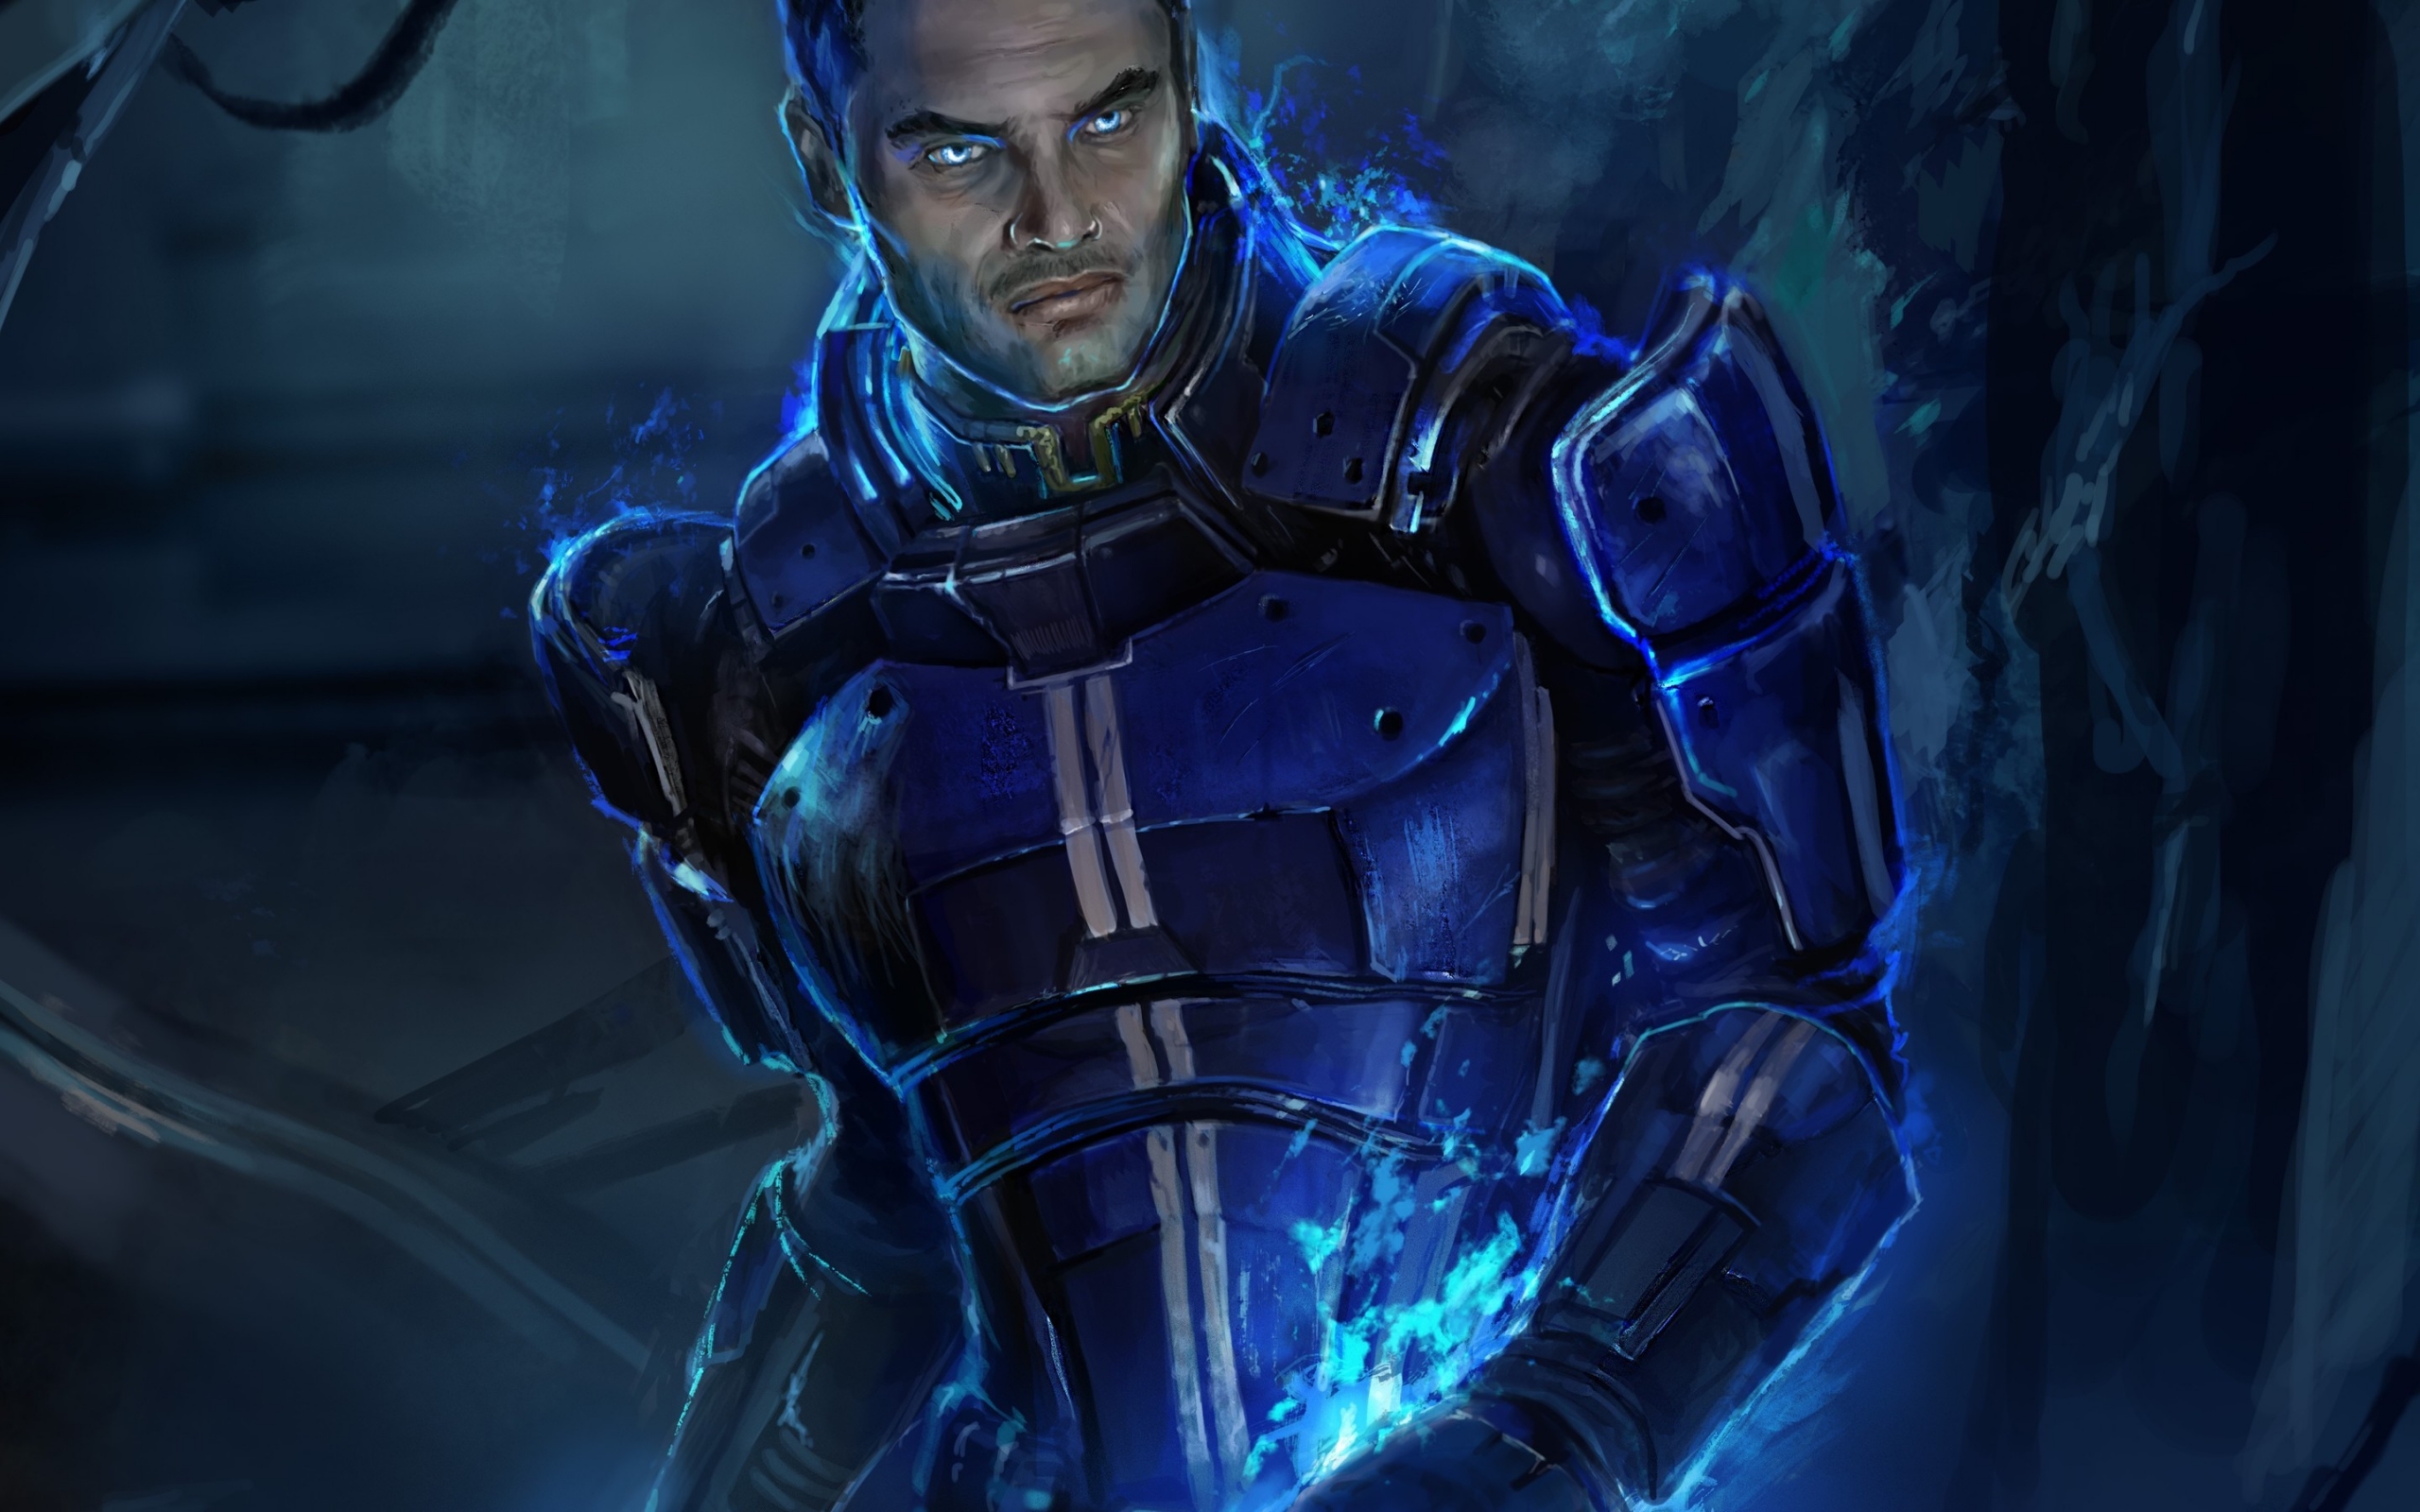 Kaidan Alenko Mass Effect 3 for 2560 x 1600 widescreen resolution